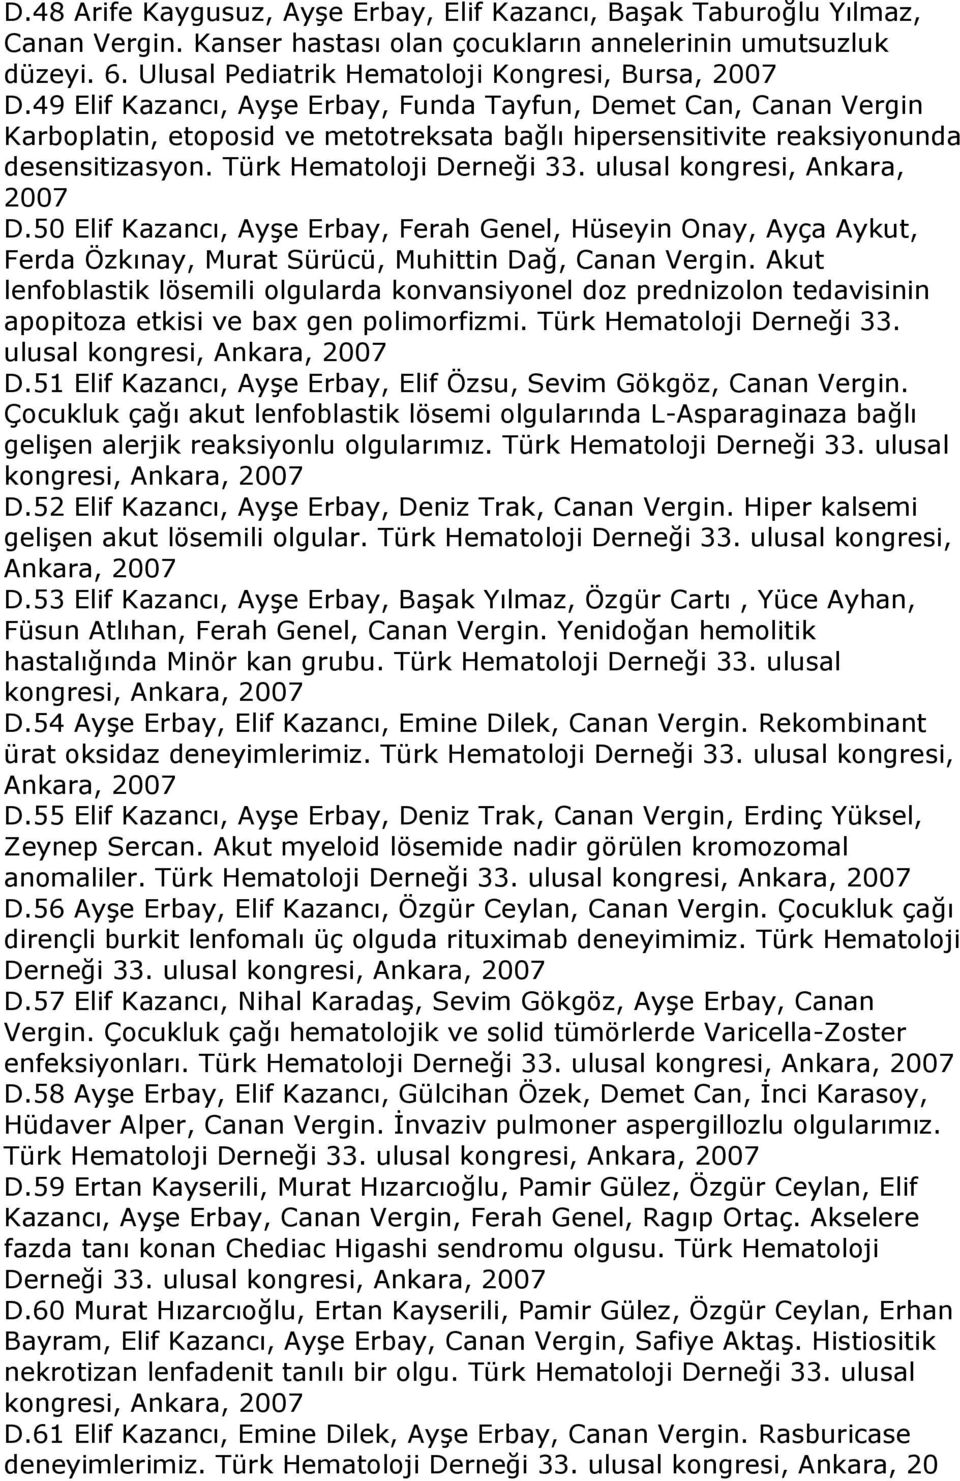 49 Elif Kazancı, Ayşe Erbay, Funda Tayfun, Demet Can, Canan Vergin Karboplatin, etoposid ve metotreksata bağlı hipersensitivite reaksiyonunda desensitizasyon. Türk Hematoloji Derneği 33.